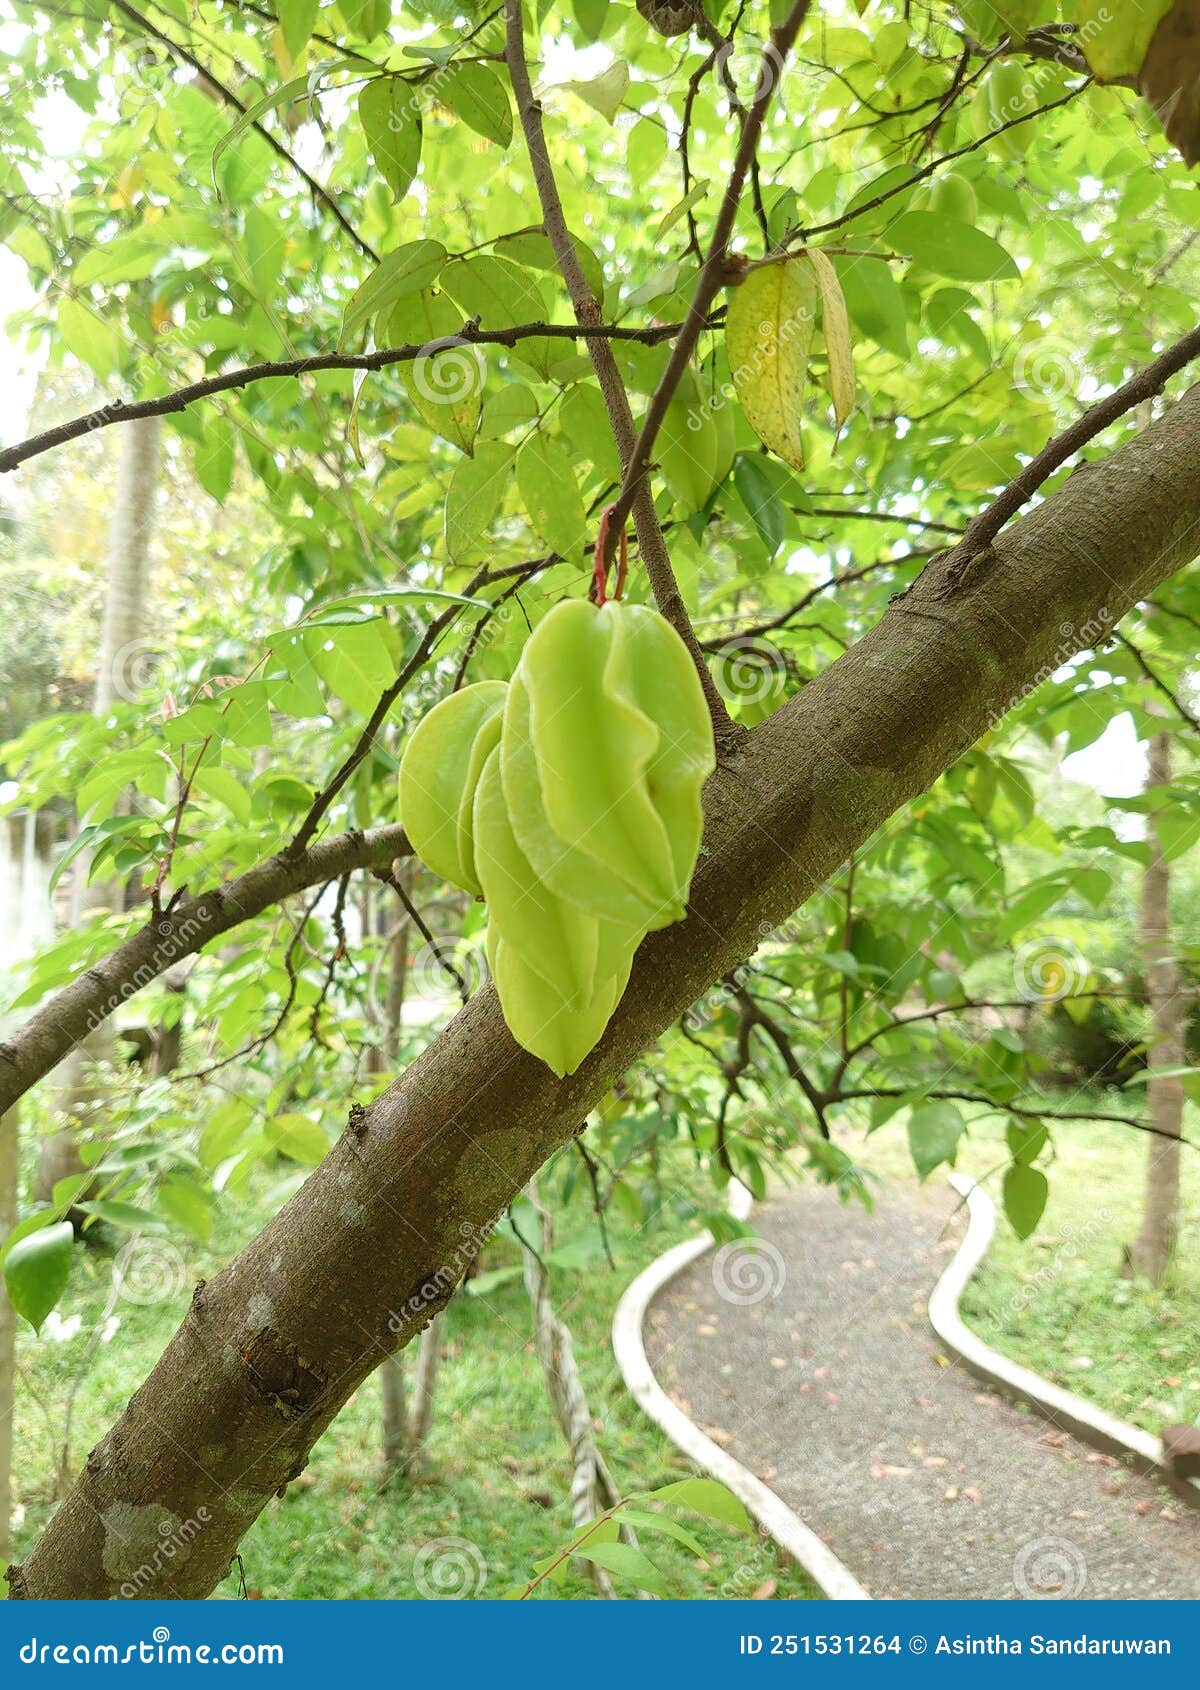 carambola fruit in sri lanka